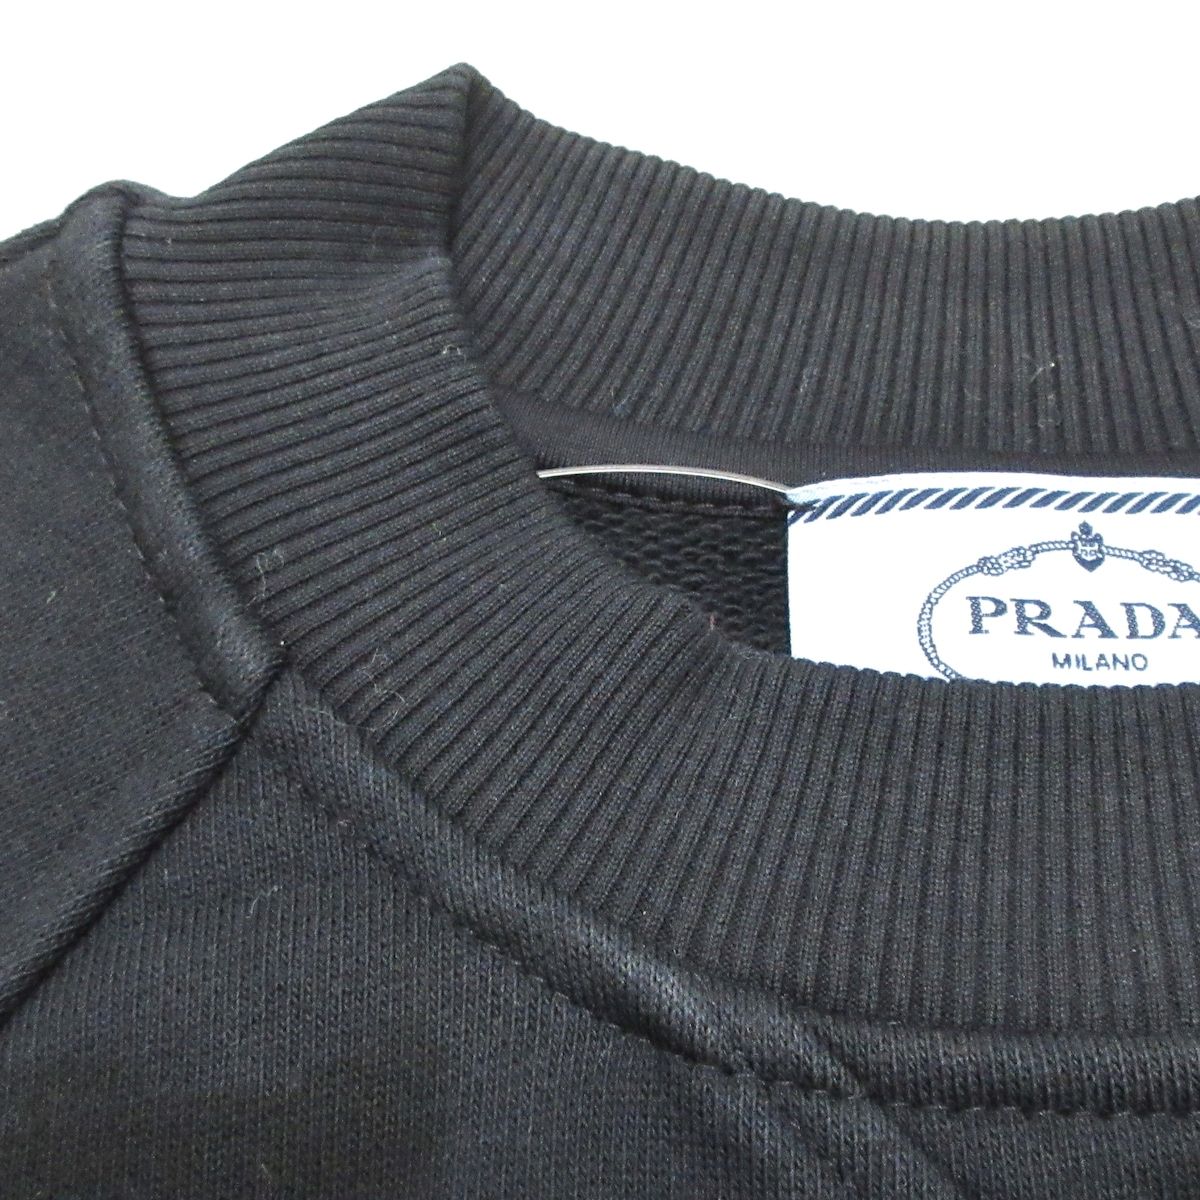 PRADA(プラダ) トレーナー メンズ - 134631 1ZT7 F0967 黒×白 長袖/クルーネック 綿